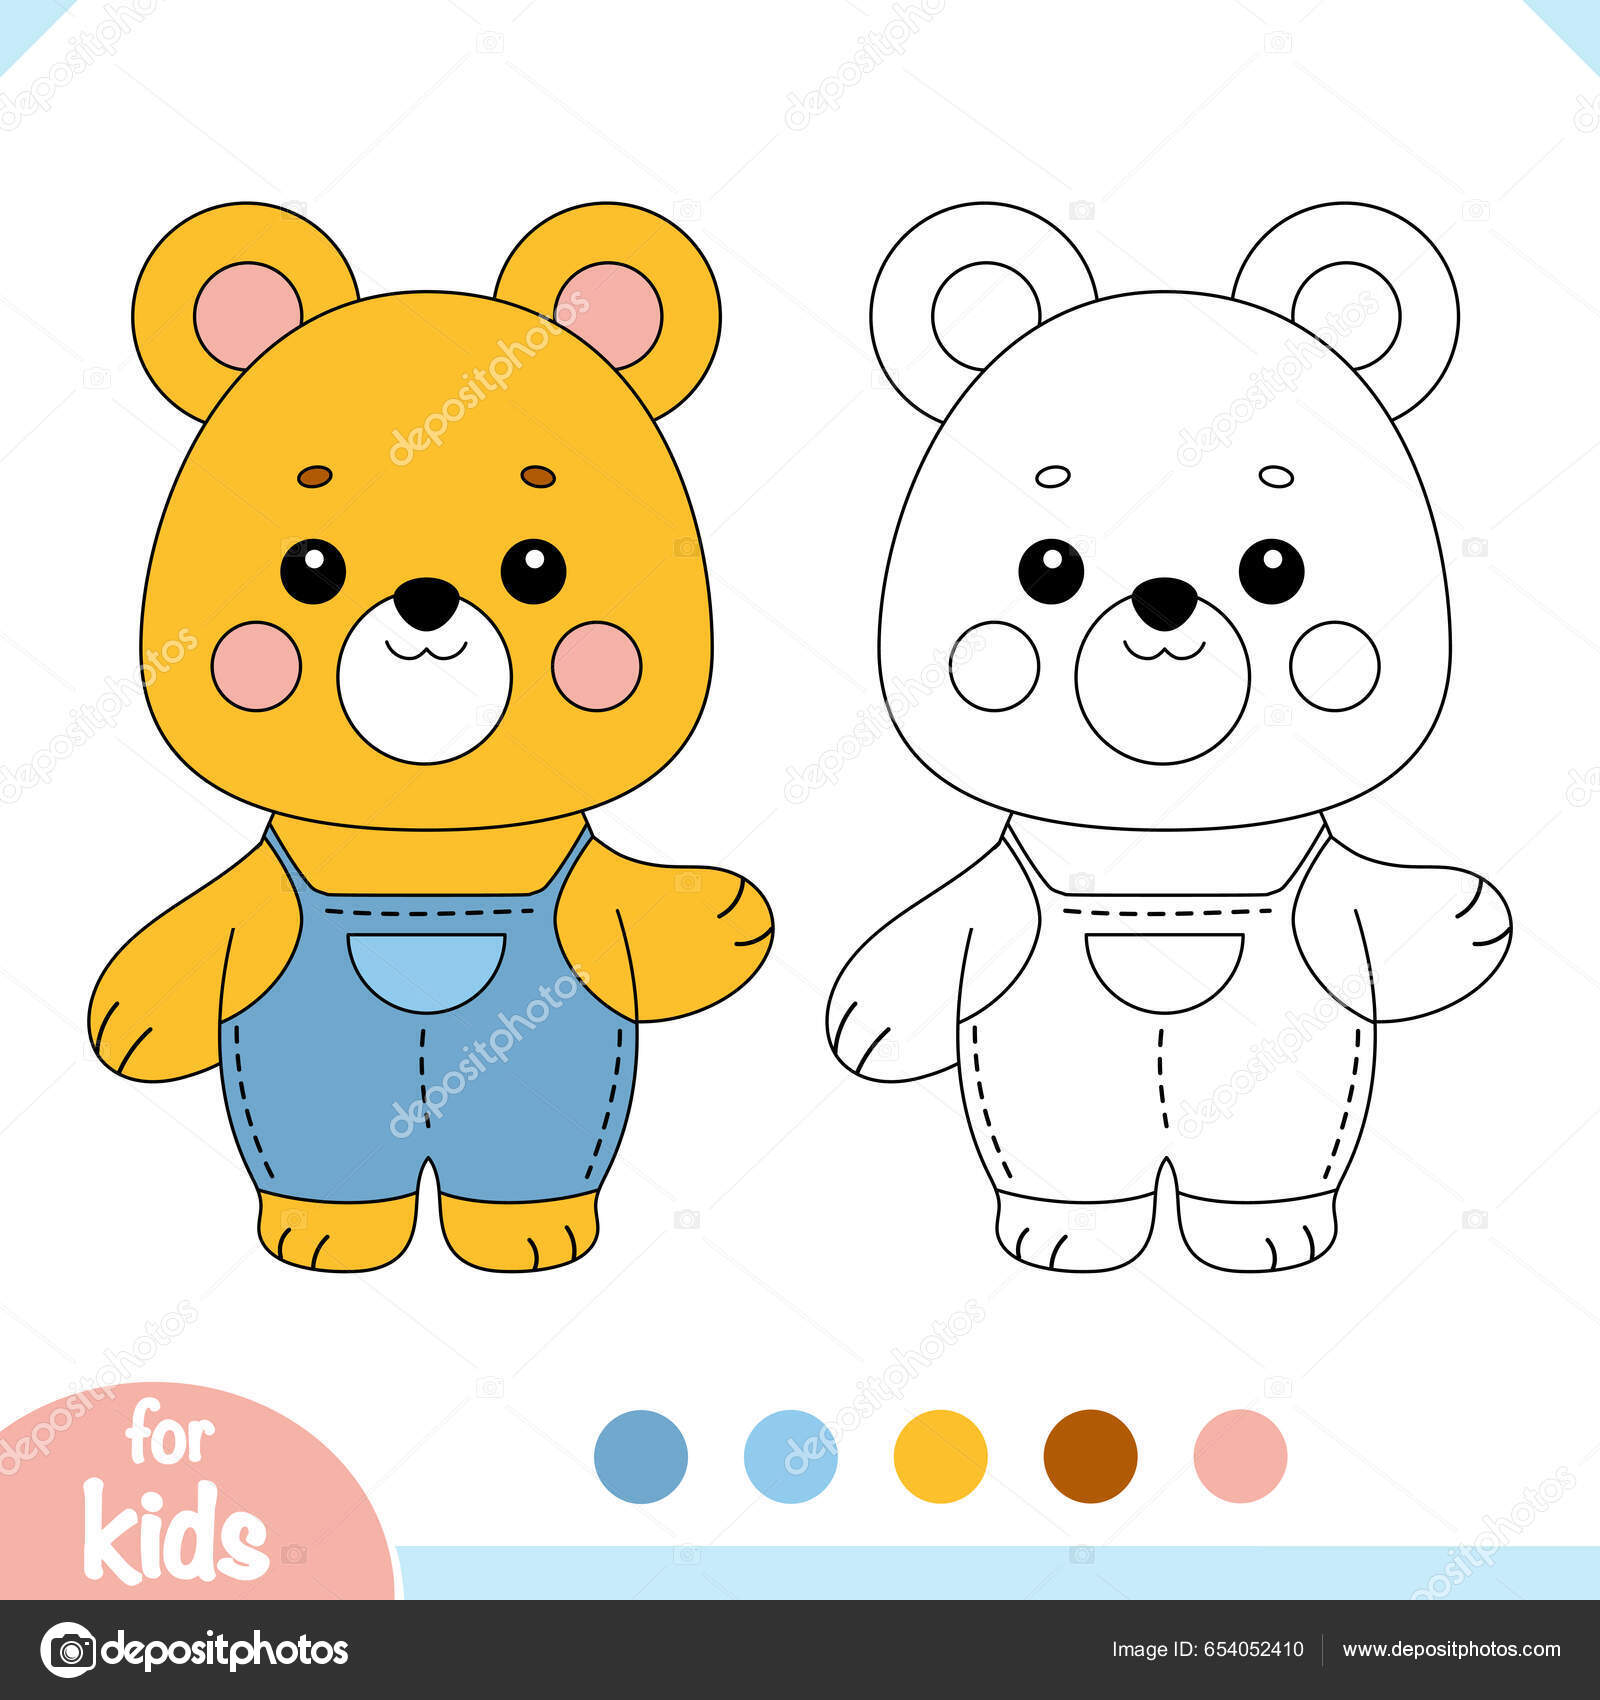 Colorir o jogo educacional panda bonito dos desenhos animados para crianças  ilustração vetorial com personagens de animais de desenho animado